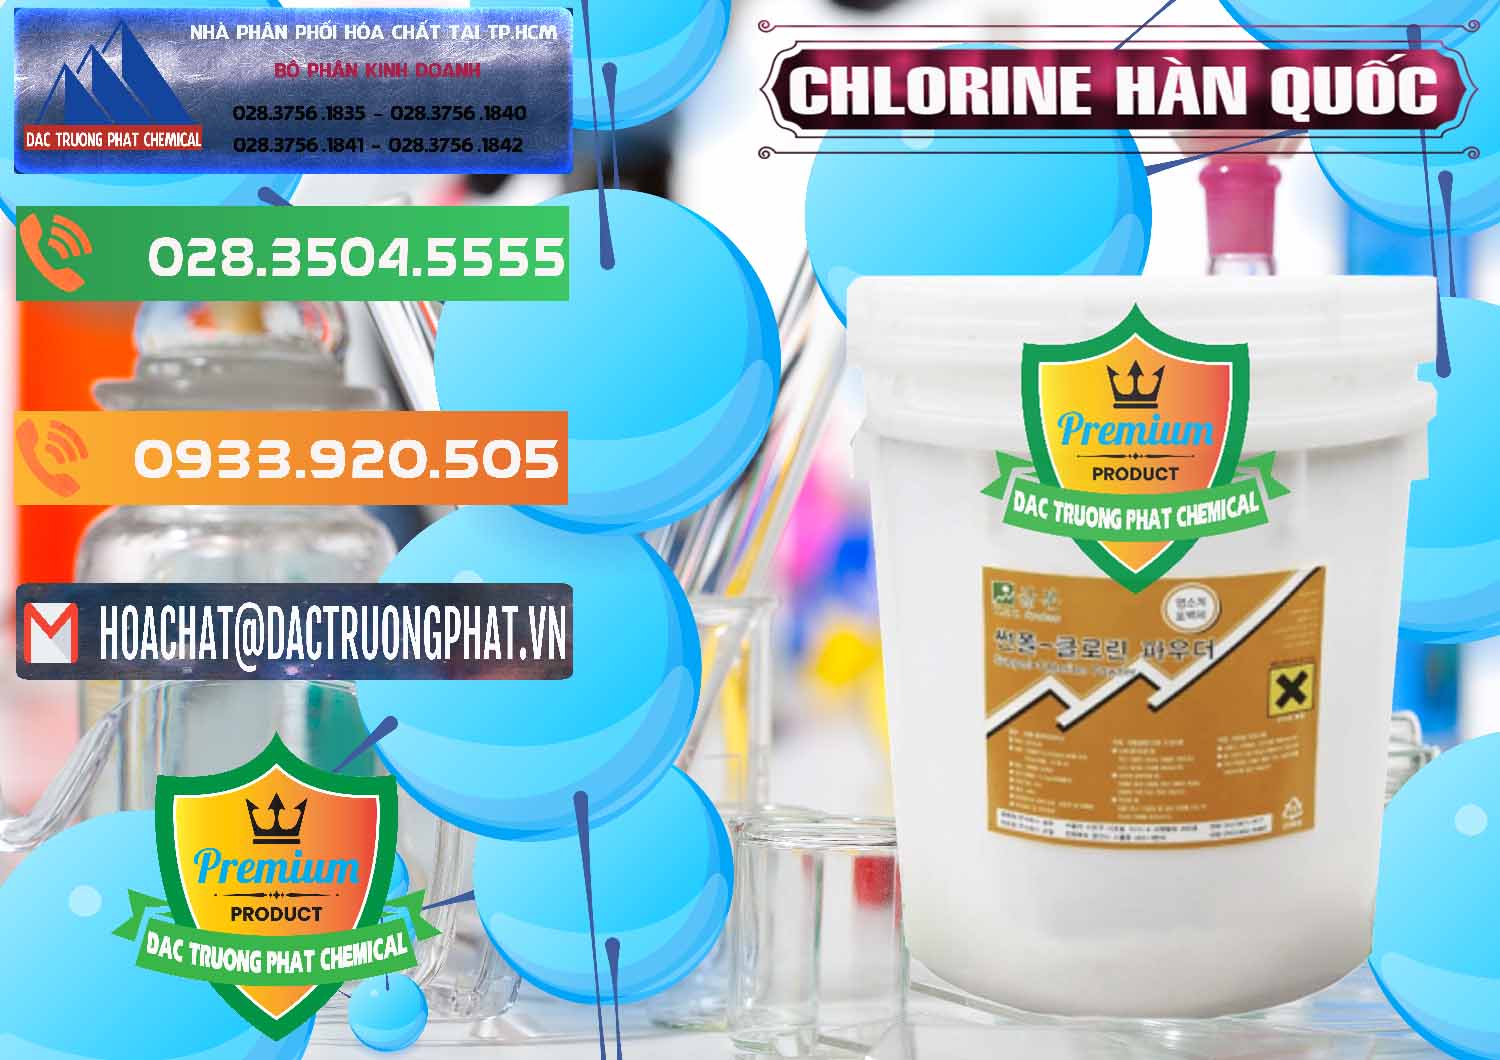 Cty chuyên phân phối và bán Chlorine – Clorin 70% Hàn Quốc Korea - 0345 - Cty phân phối _ cung ứng hóa chất tại TP.HCM - hoachatxulynuoc.com.vn